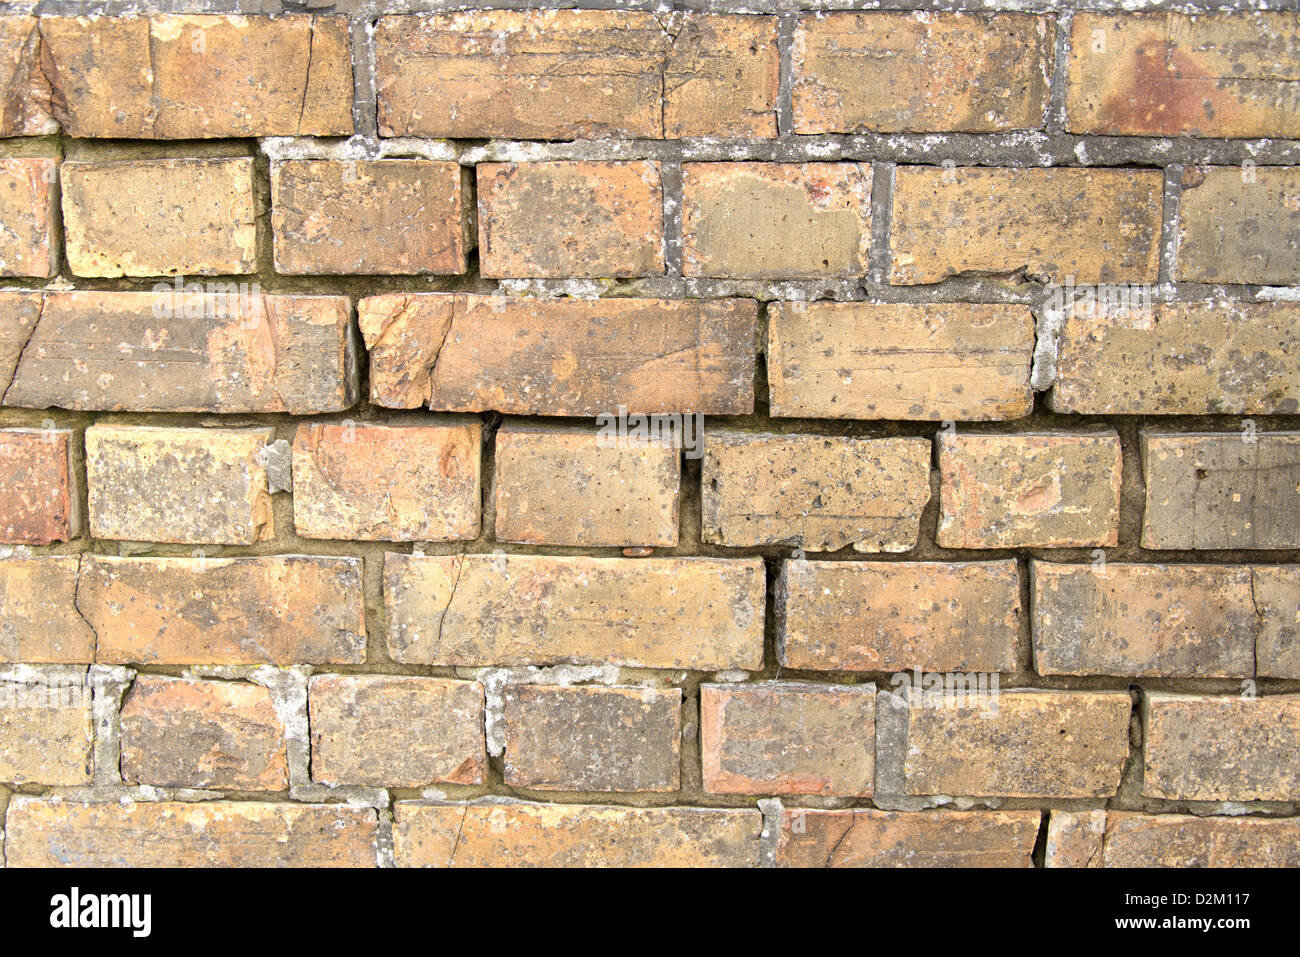 Eine alte verwitterte Mauer, wo ein Großteil der Zement Mörtel zwischen den Steinen überworfen hat, und muss repariert werden. Stockfoto